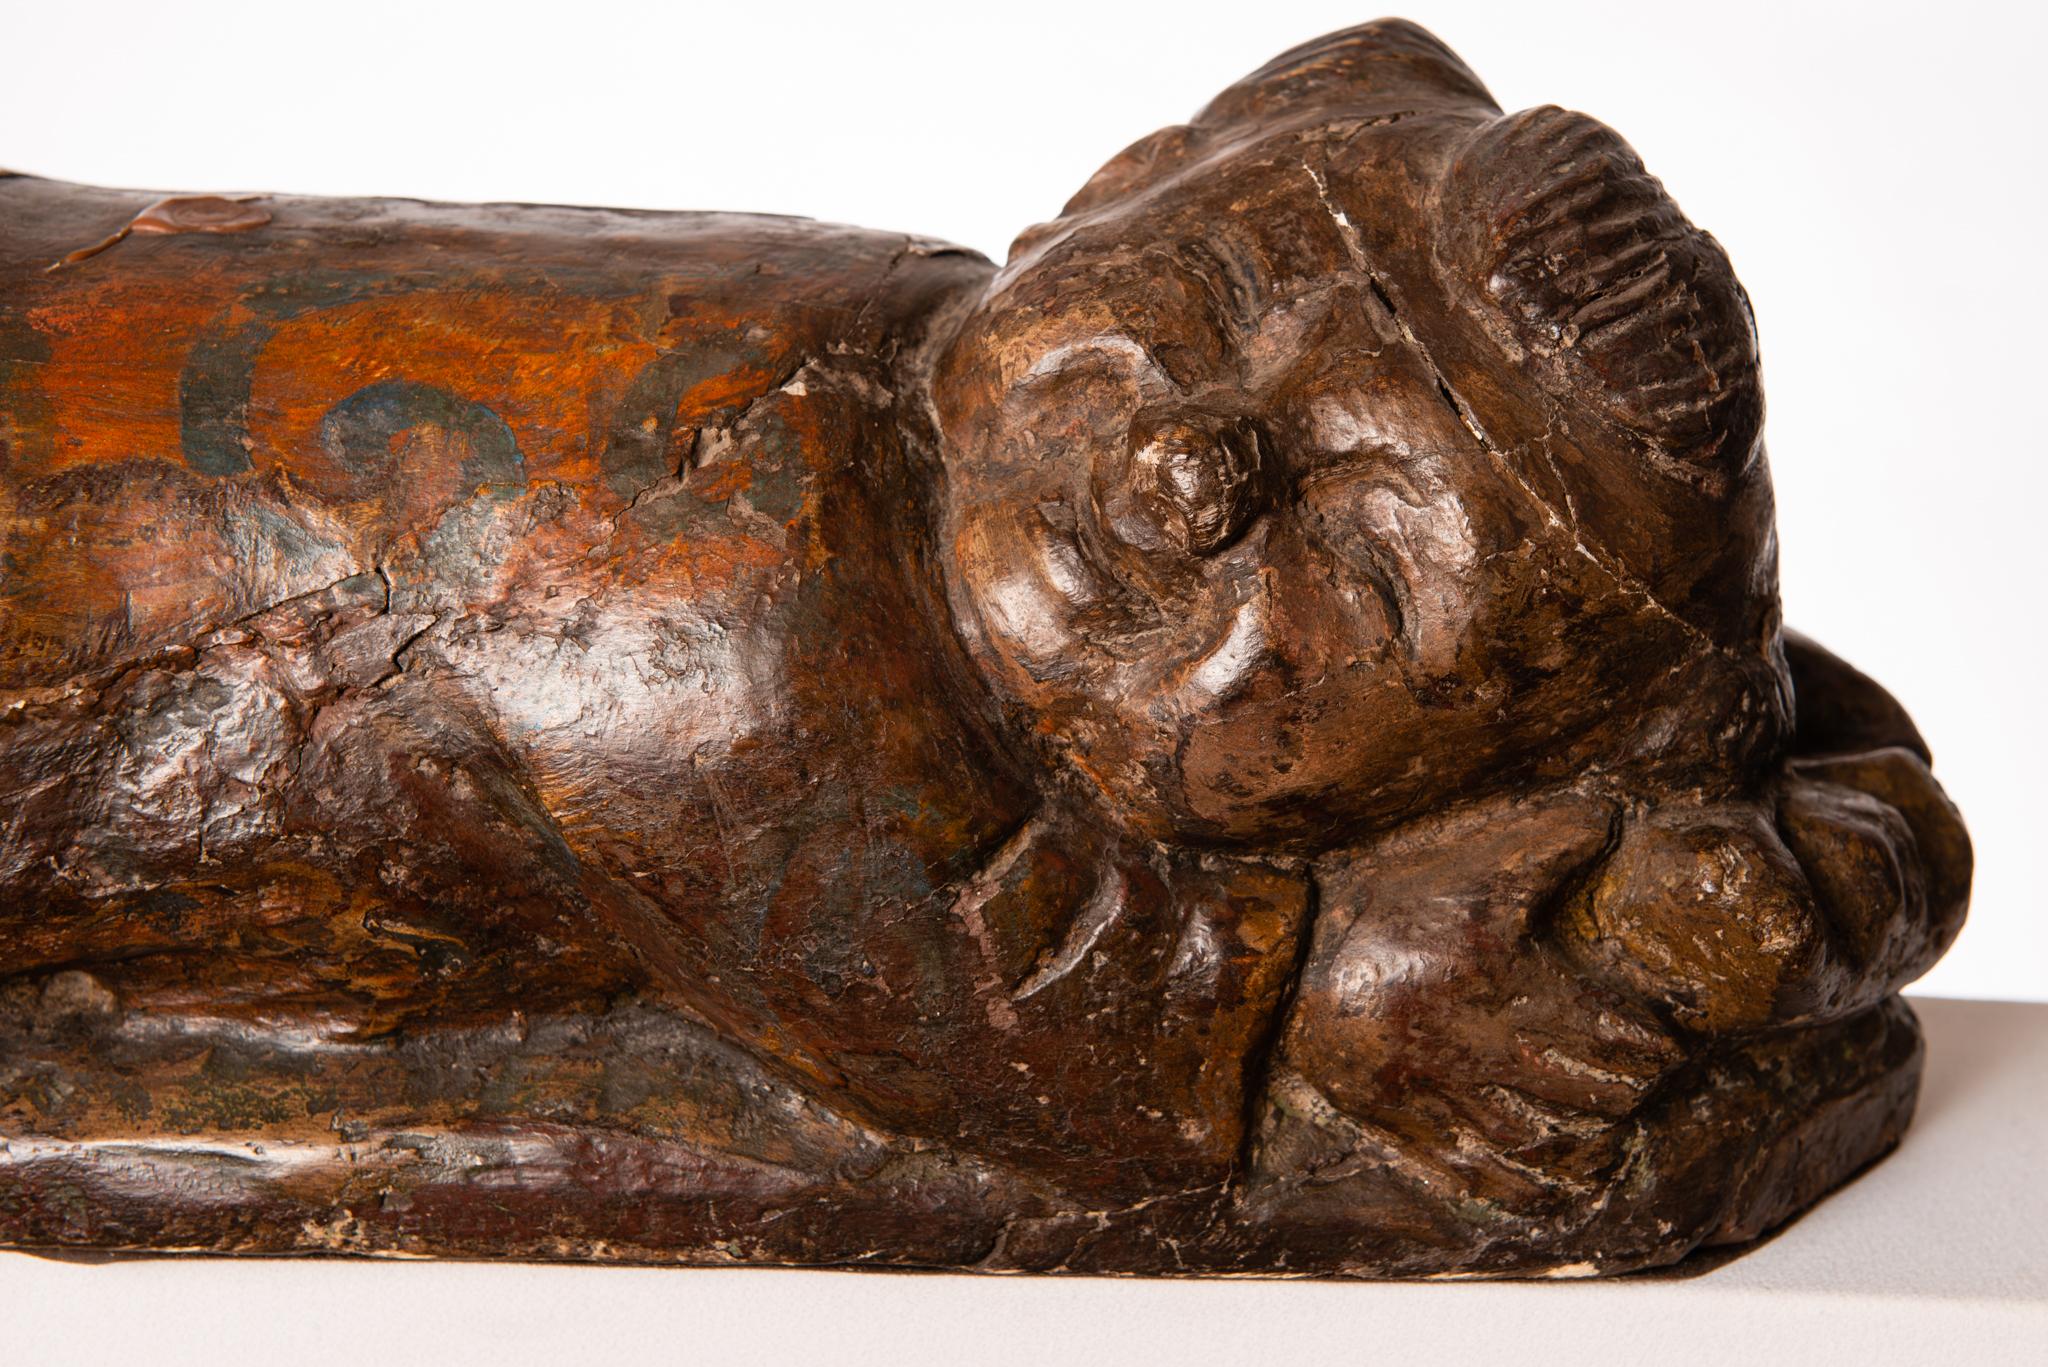 Agréable statue en bois représentant un bébé chinois souriant et endormi, la tête reposant sur un oreiller.
Il était utilisé comme appui-tête pour les coiffures élaborées des nobles chinois.
O/5303.